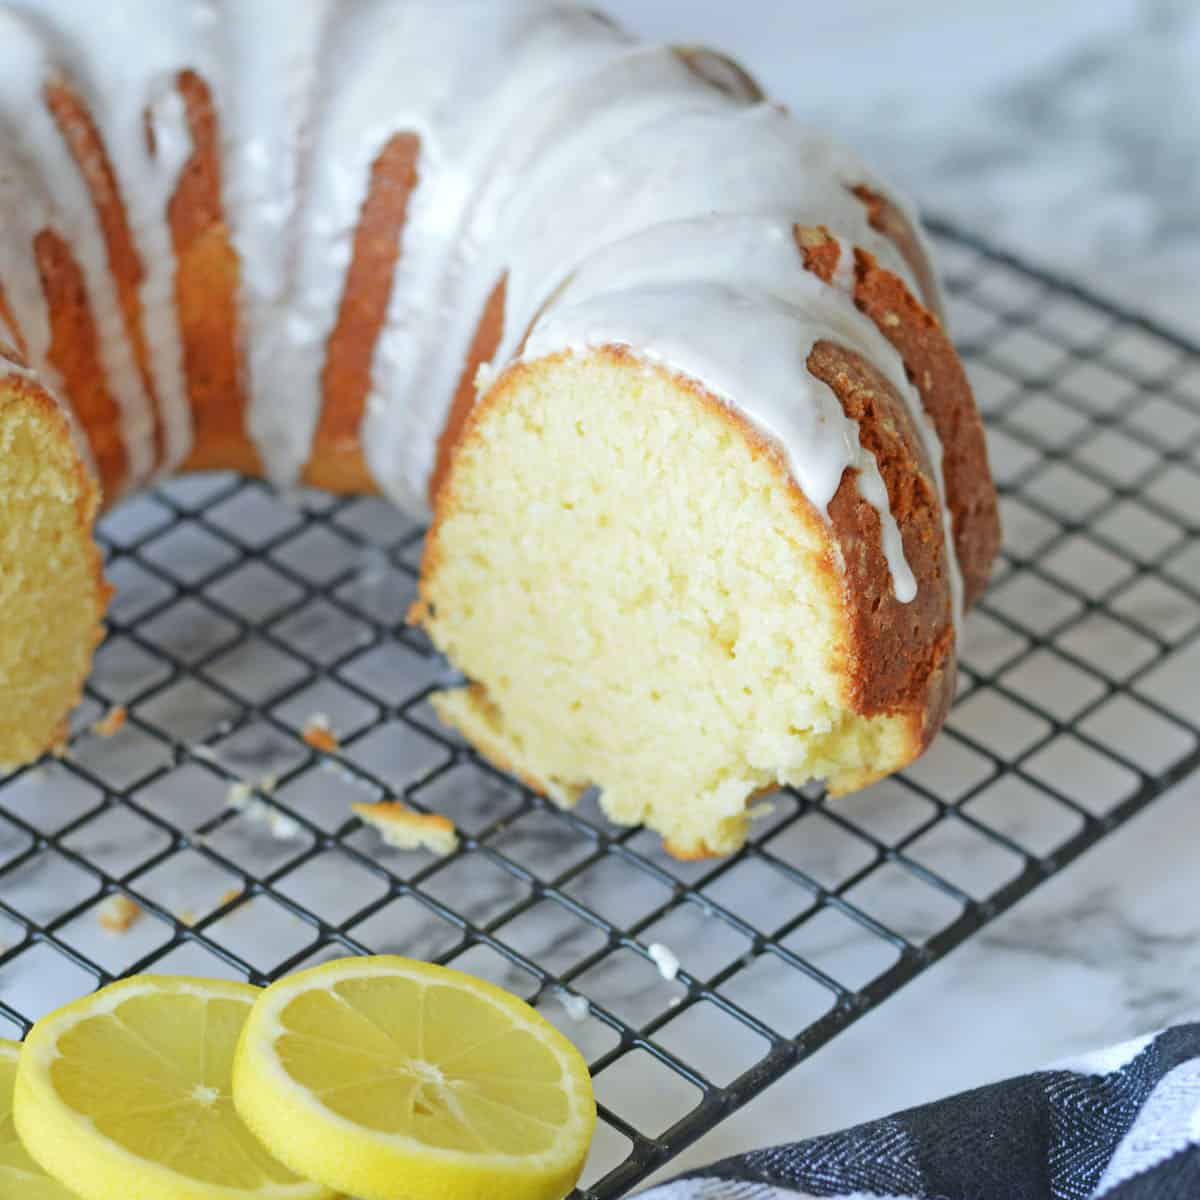 https://kellystilwell.com/wp-content/uploads/2022/03/Italian-lemon-pound-cake-partial-1.jpg